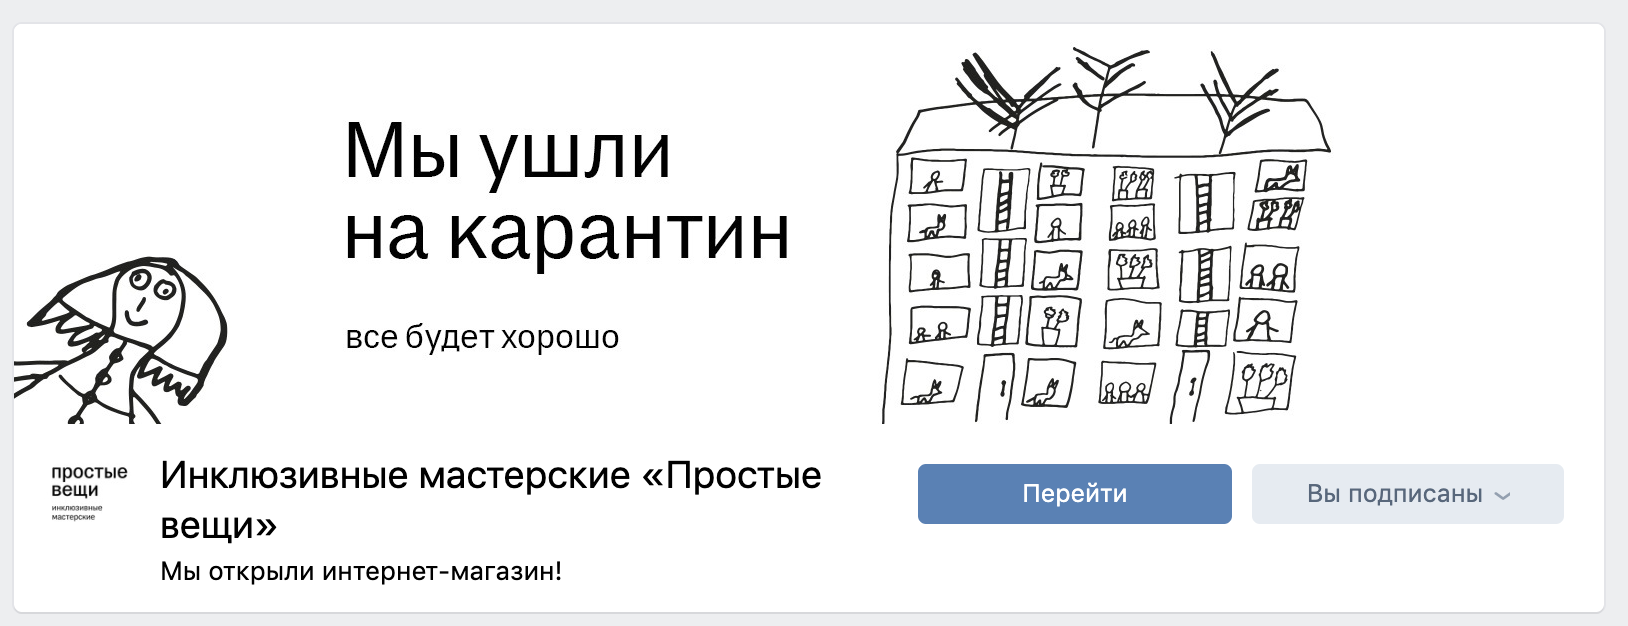 Пример ситуативной обложки в группе Вконтакте инклюзивных мастерских "Простые вещи". Изображение: скриншот из группы: vk.com/prostieveschi_ru